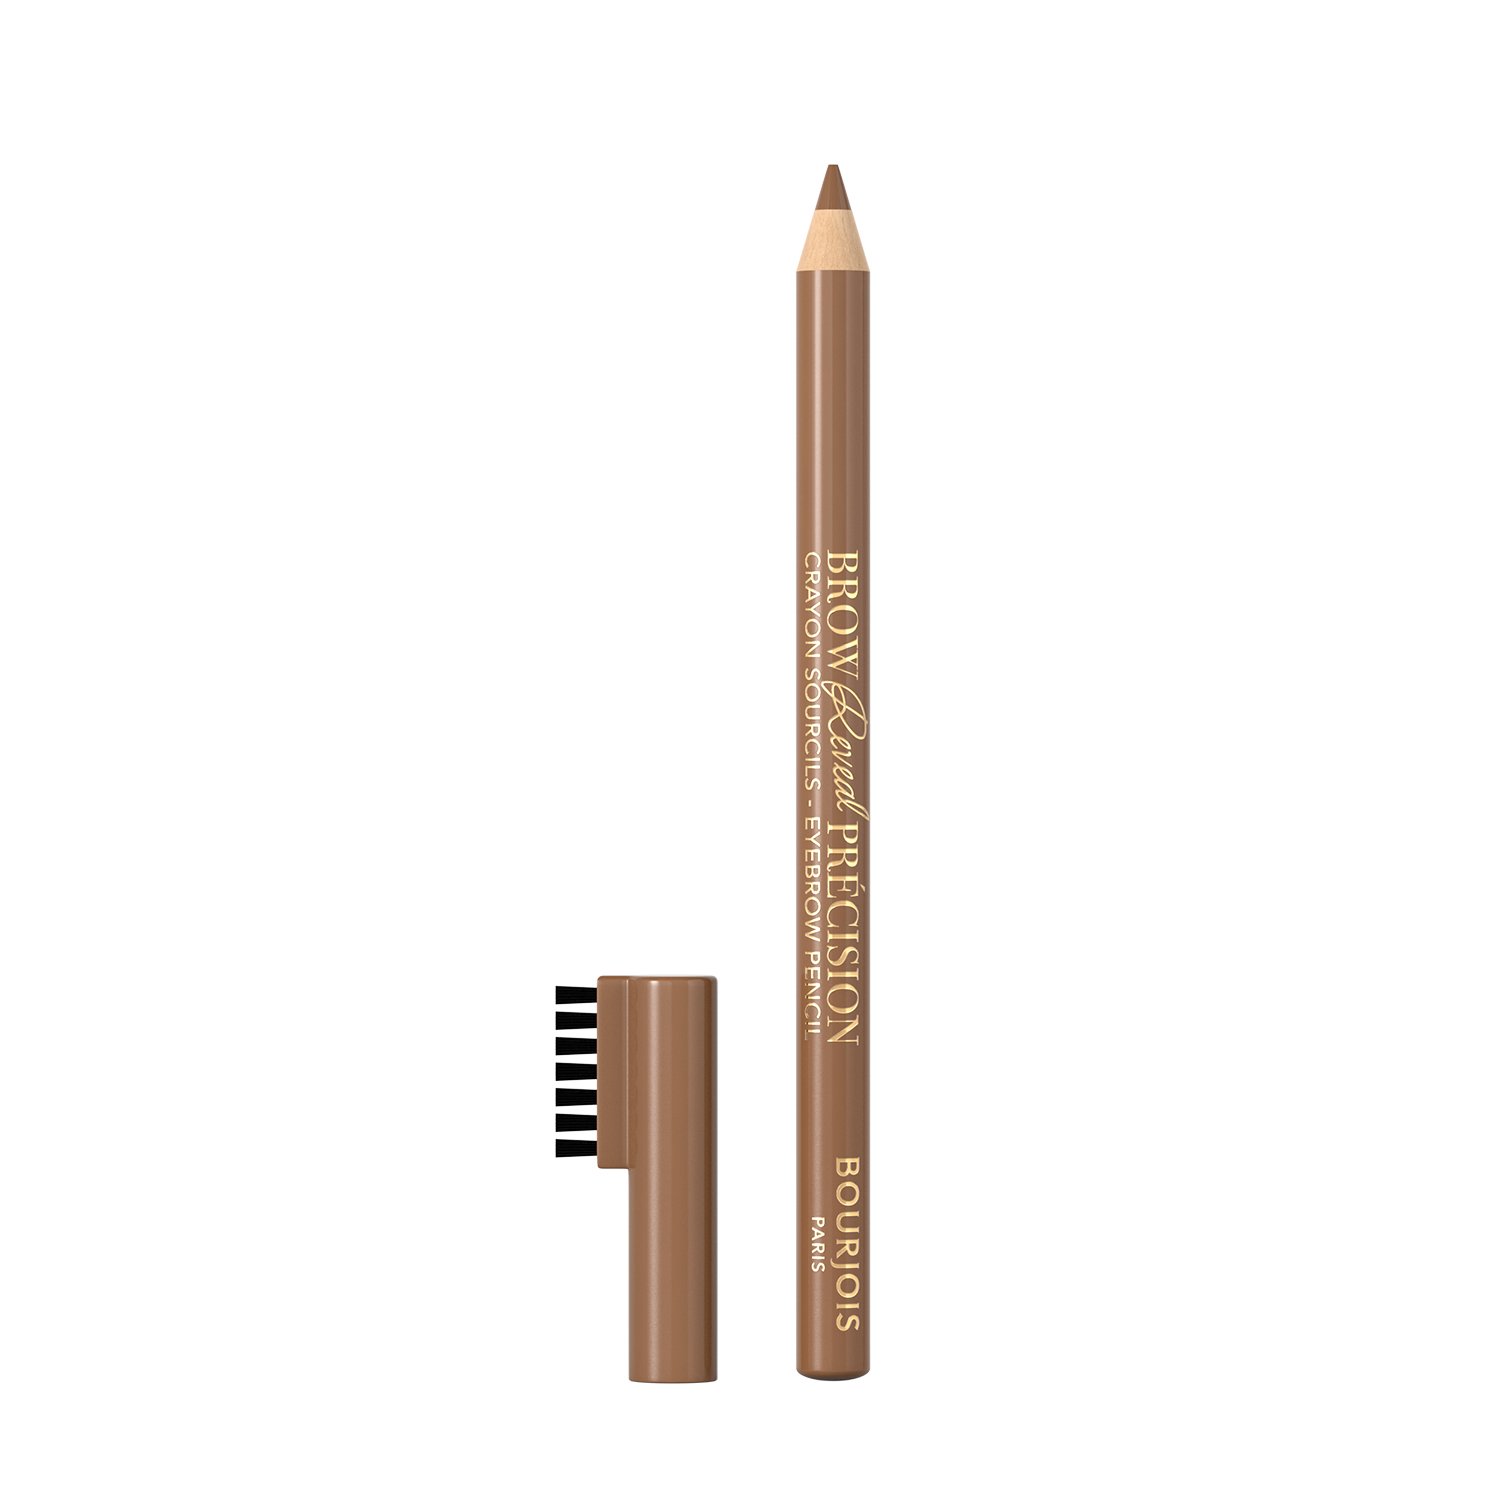 Олівець для брів Bourjois Brow Reveal Precision Soft Brown тон 002, 1.4 г (8000019760398) - фото 2